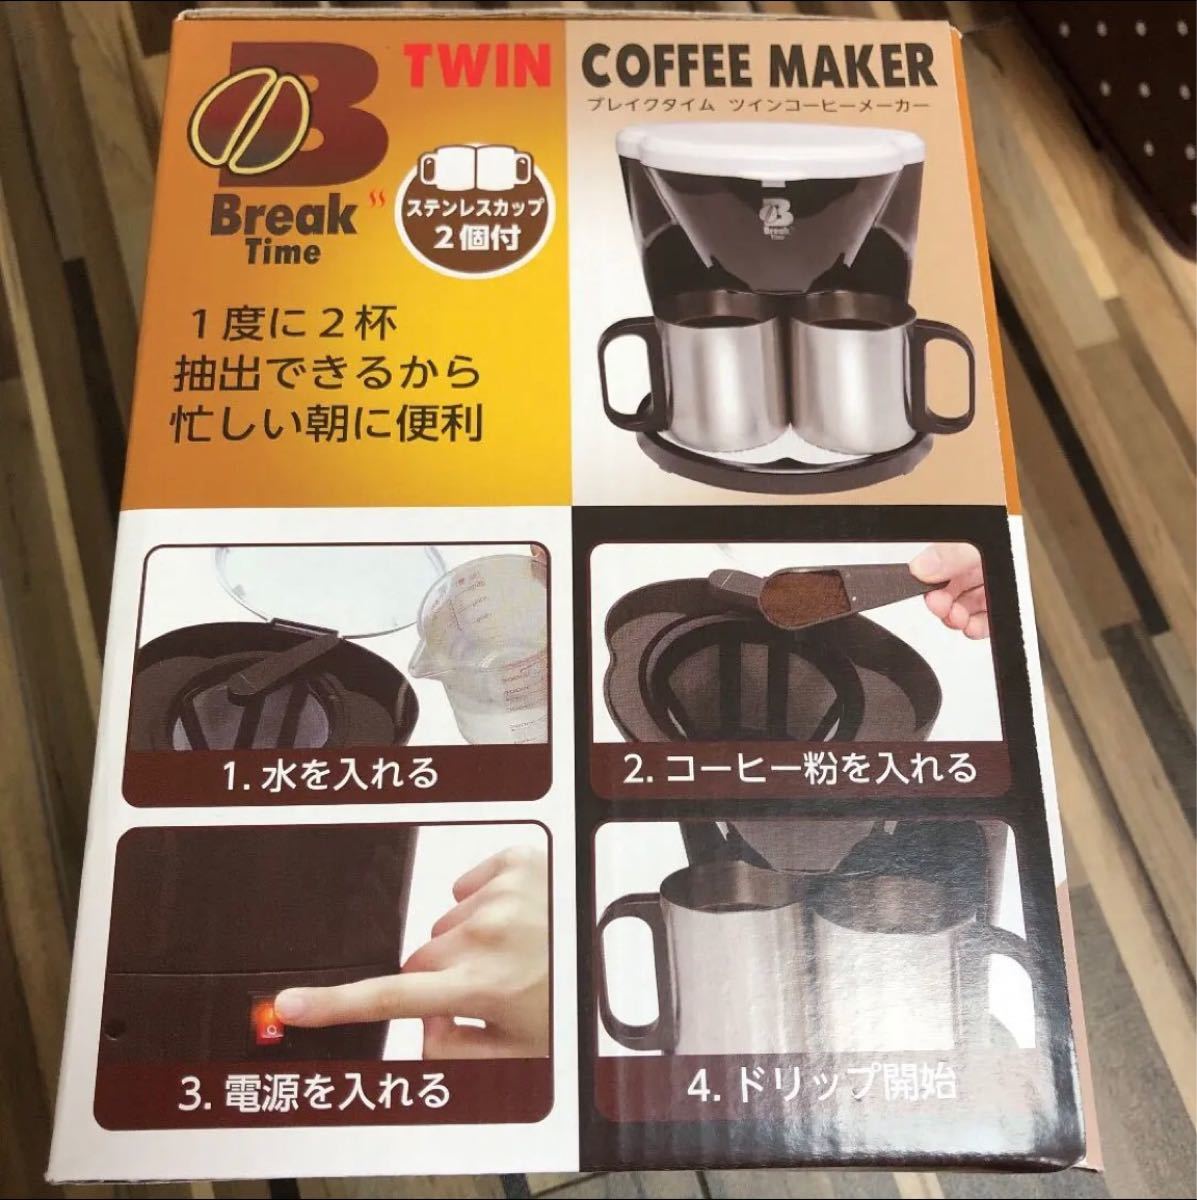 ツインコーヒーメーカー